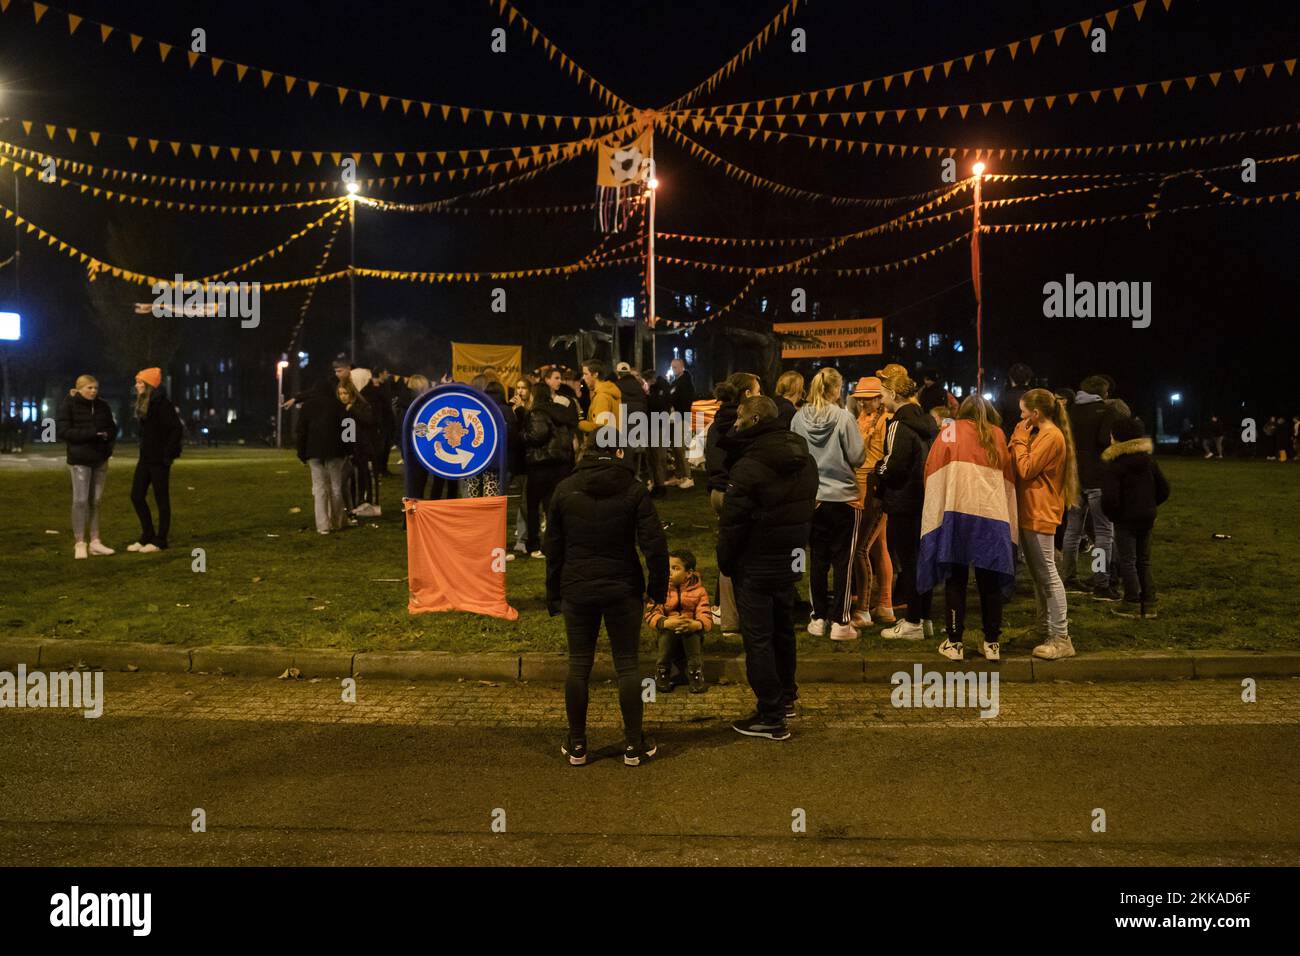 APELDOORN - Fußballfans haben sich in der sogenannten Oranjerotonde versammelt. Der Kreisverkehr im Stadtteil Laan van Maten im Stadtteil De Maten wird immer bekannter als Treffpunkt für Fußballfans, die sich dort nach Spielen der niederländischen Nationalmannschaft versammeln. ANP JEROEN JUMELET niederlande raus - belgien raus Stockfoto